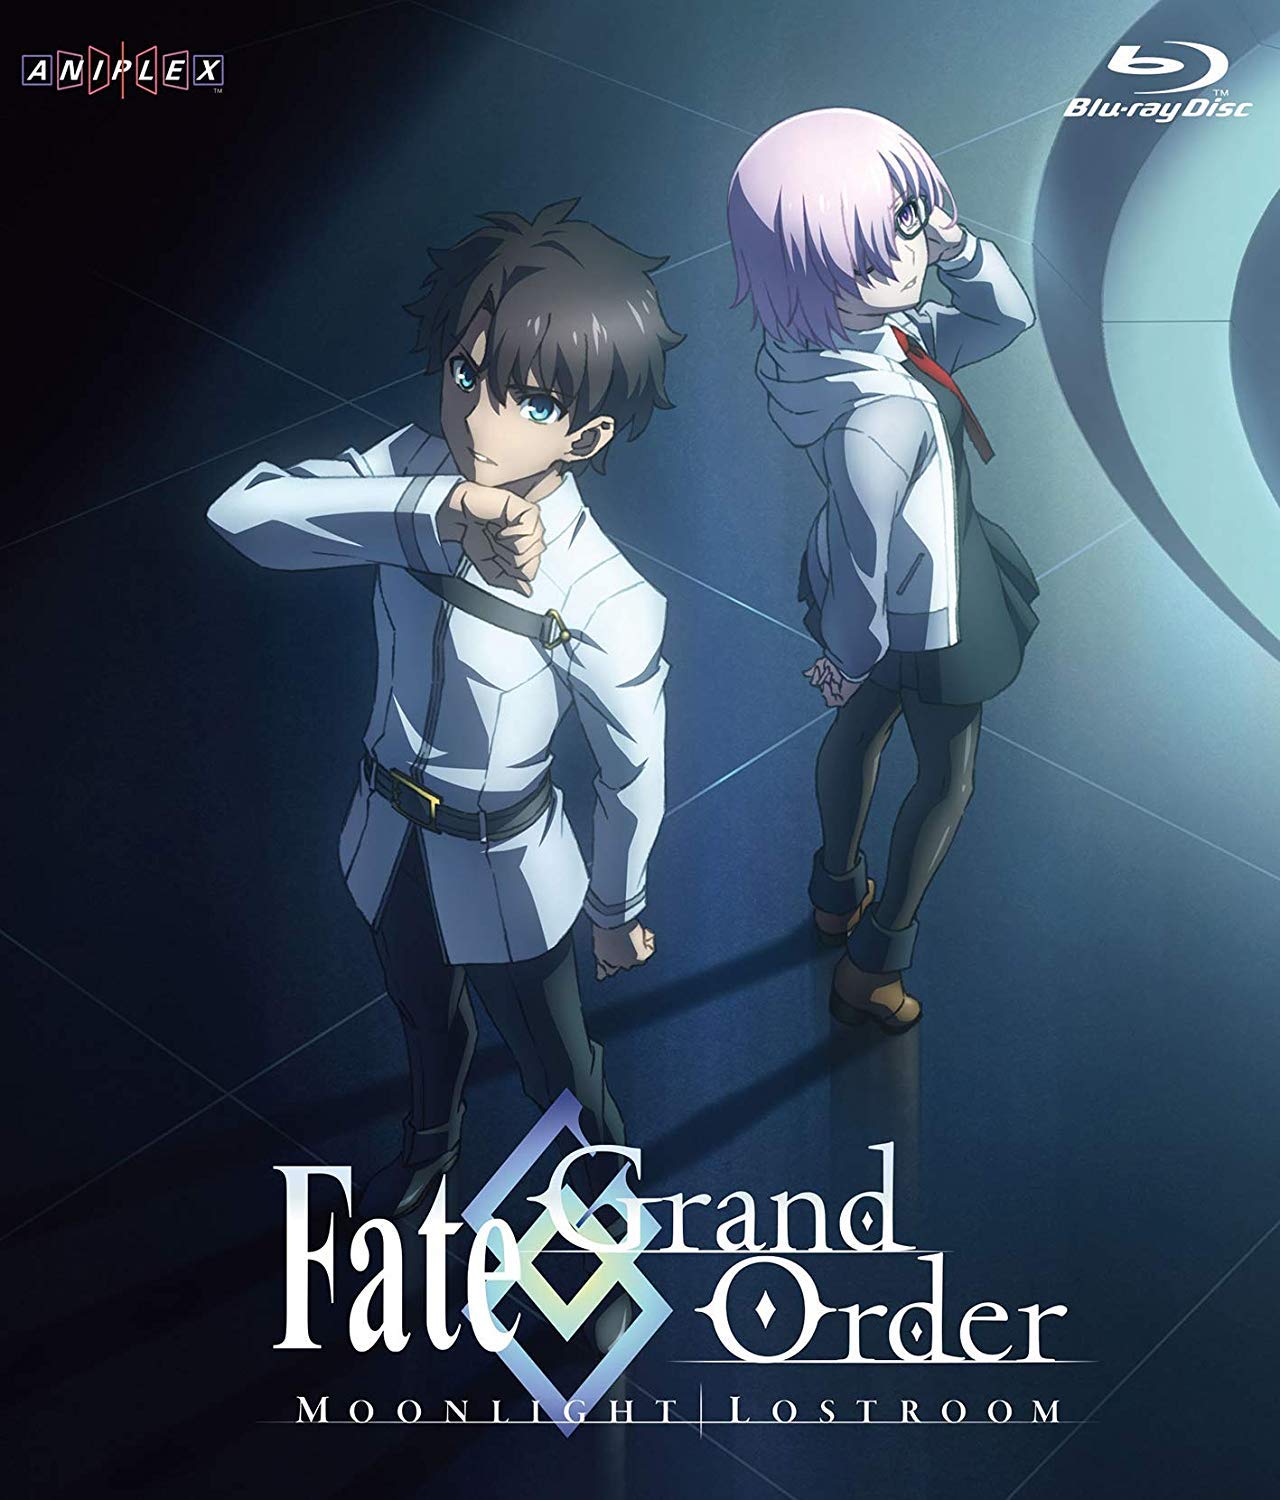 Fate Grand Order tw 2021.jpg